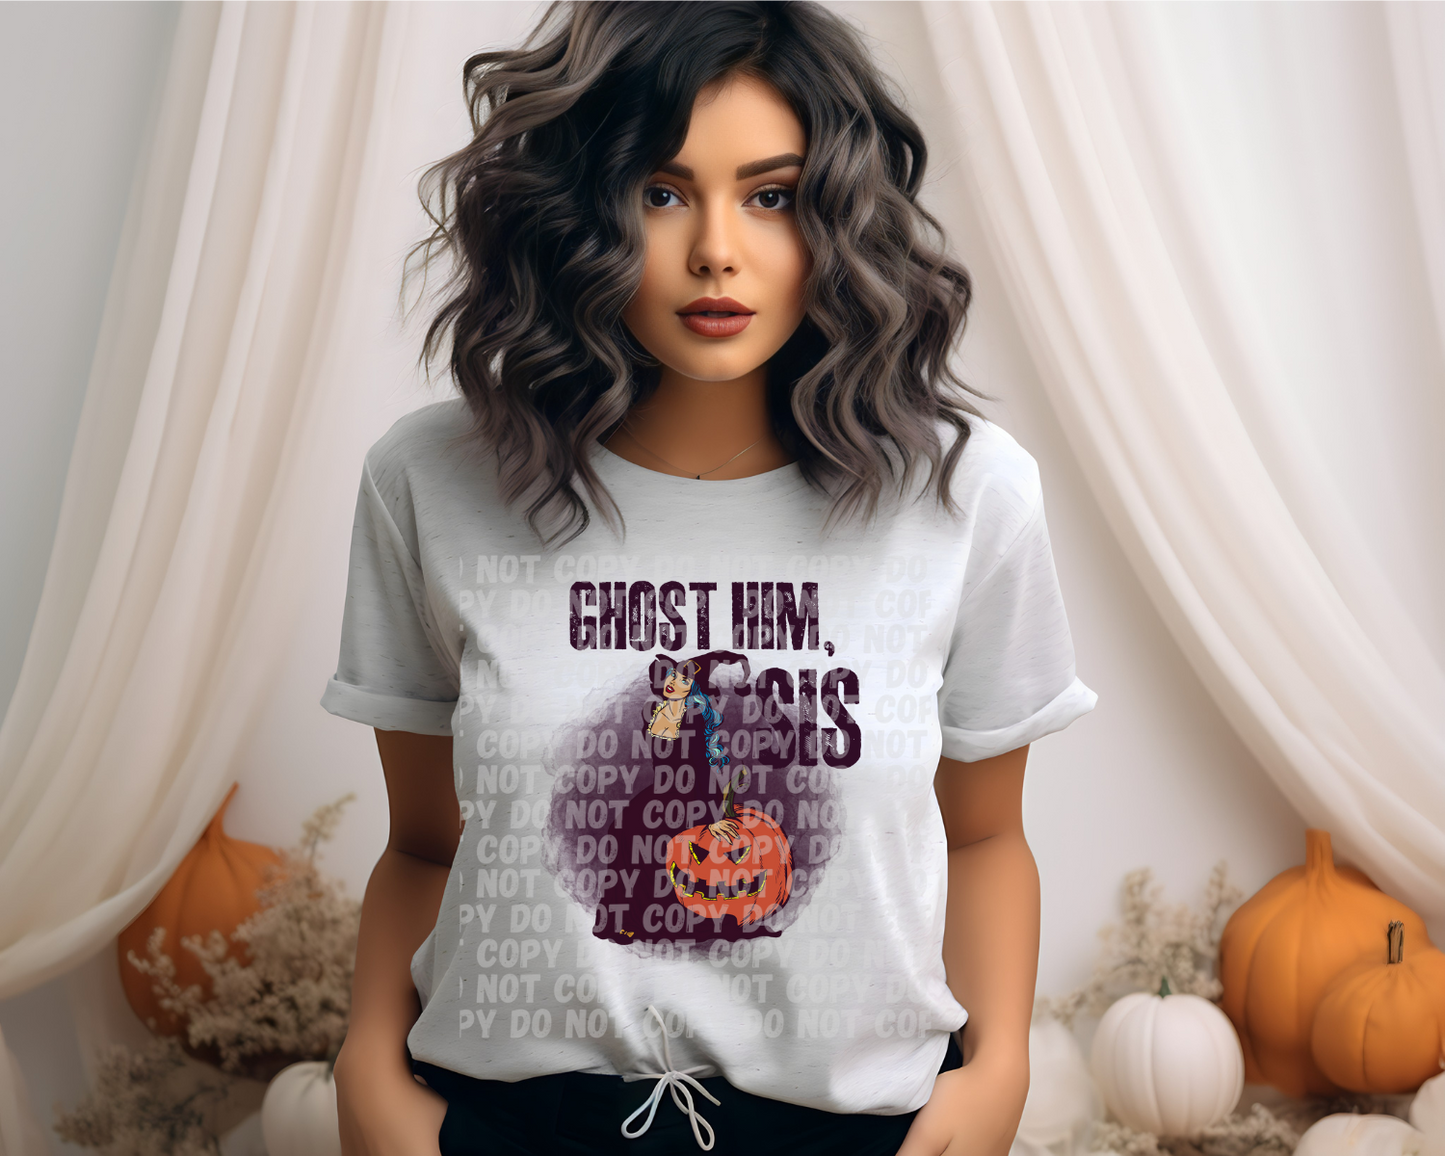 Ghost him shirt. -Mayan Sub Shop